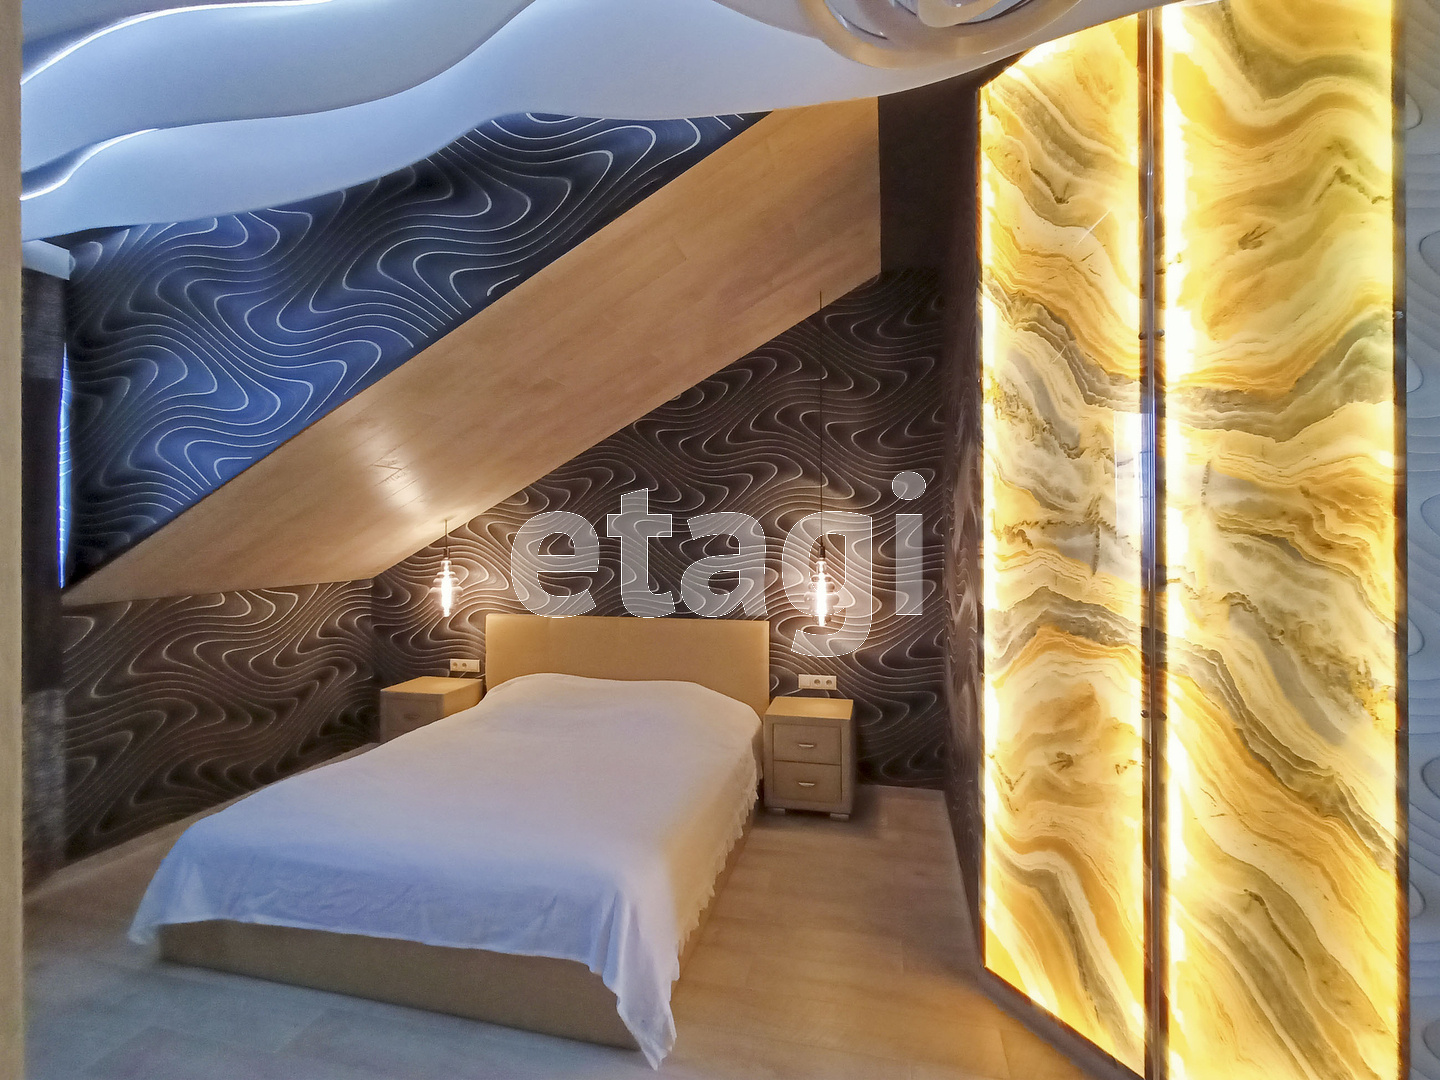 Главная спальня сразу встречает нас эффектной стеной с подсветкой. Она напоминает то ли янтарь, то ли стекающую с потолка лаву. Как вам кажется?